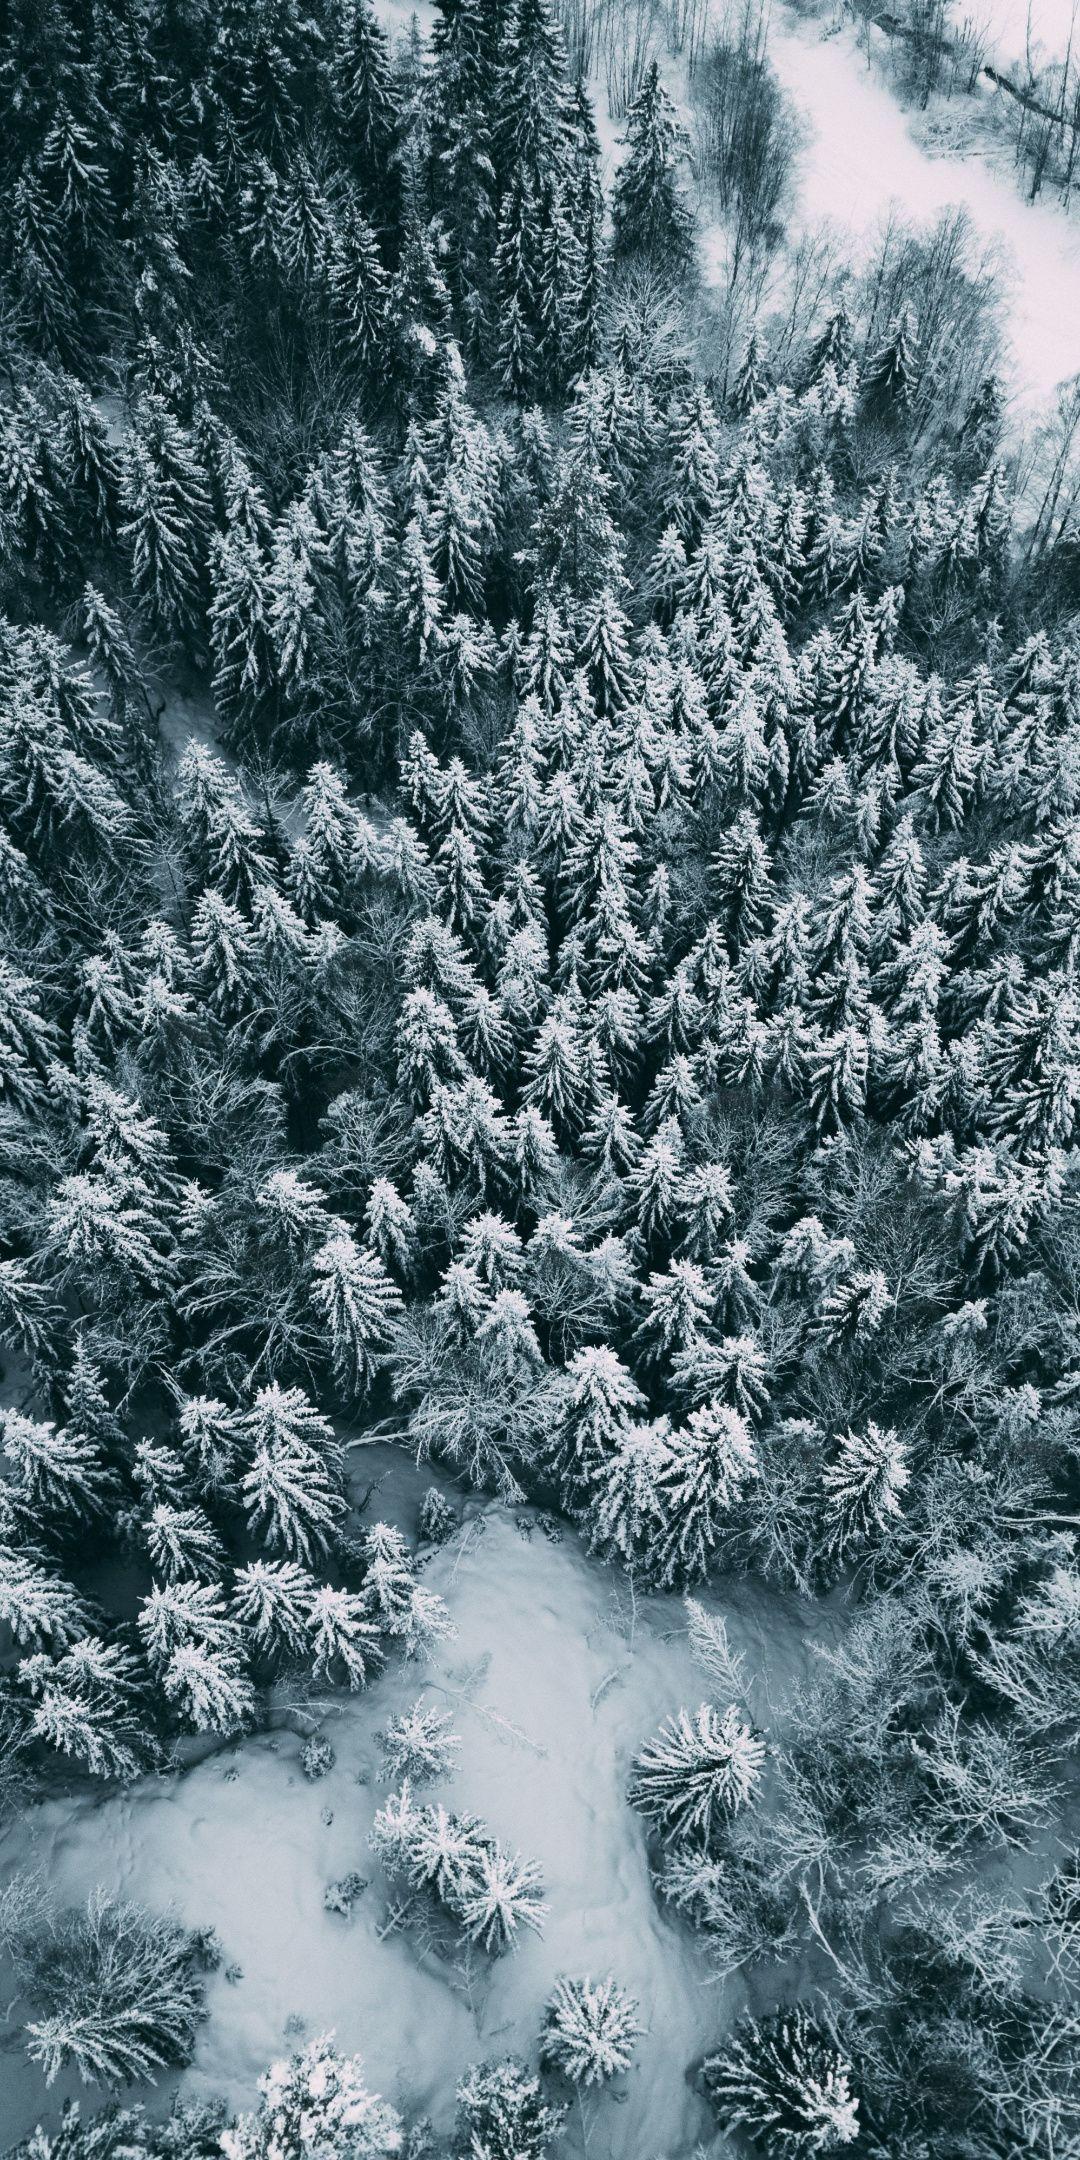 Tận hưởng vẻ đẹp của mùa đông với hình nền cây thông rừng ở mùa đông. Bức tranh sống động này thực sự khiến cho bạn thích thú với các màu sắc tươi trẻ, chủ đề mùa đông và thiết kế tỉ mỉ đến từng chi tiết. Bạn nhìn vào đó là chìm đắm vào những giây phút an lành của mùa đông.